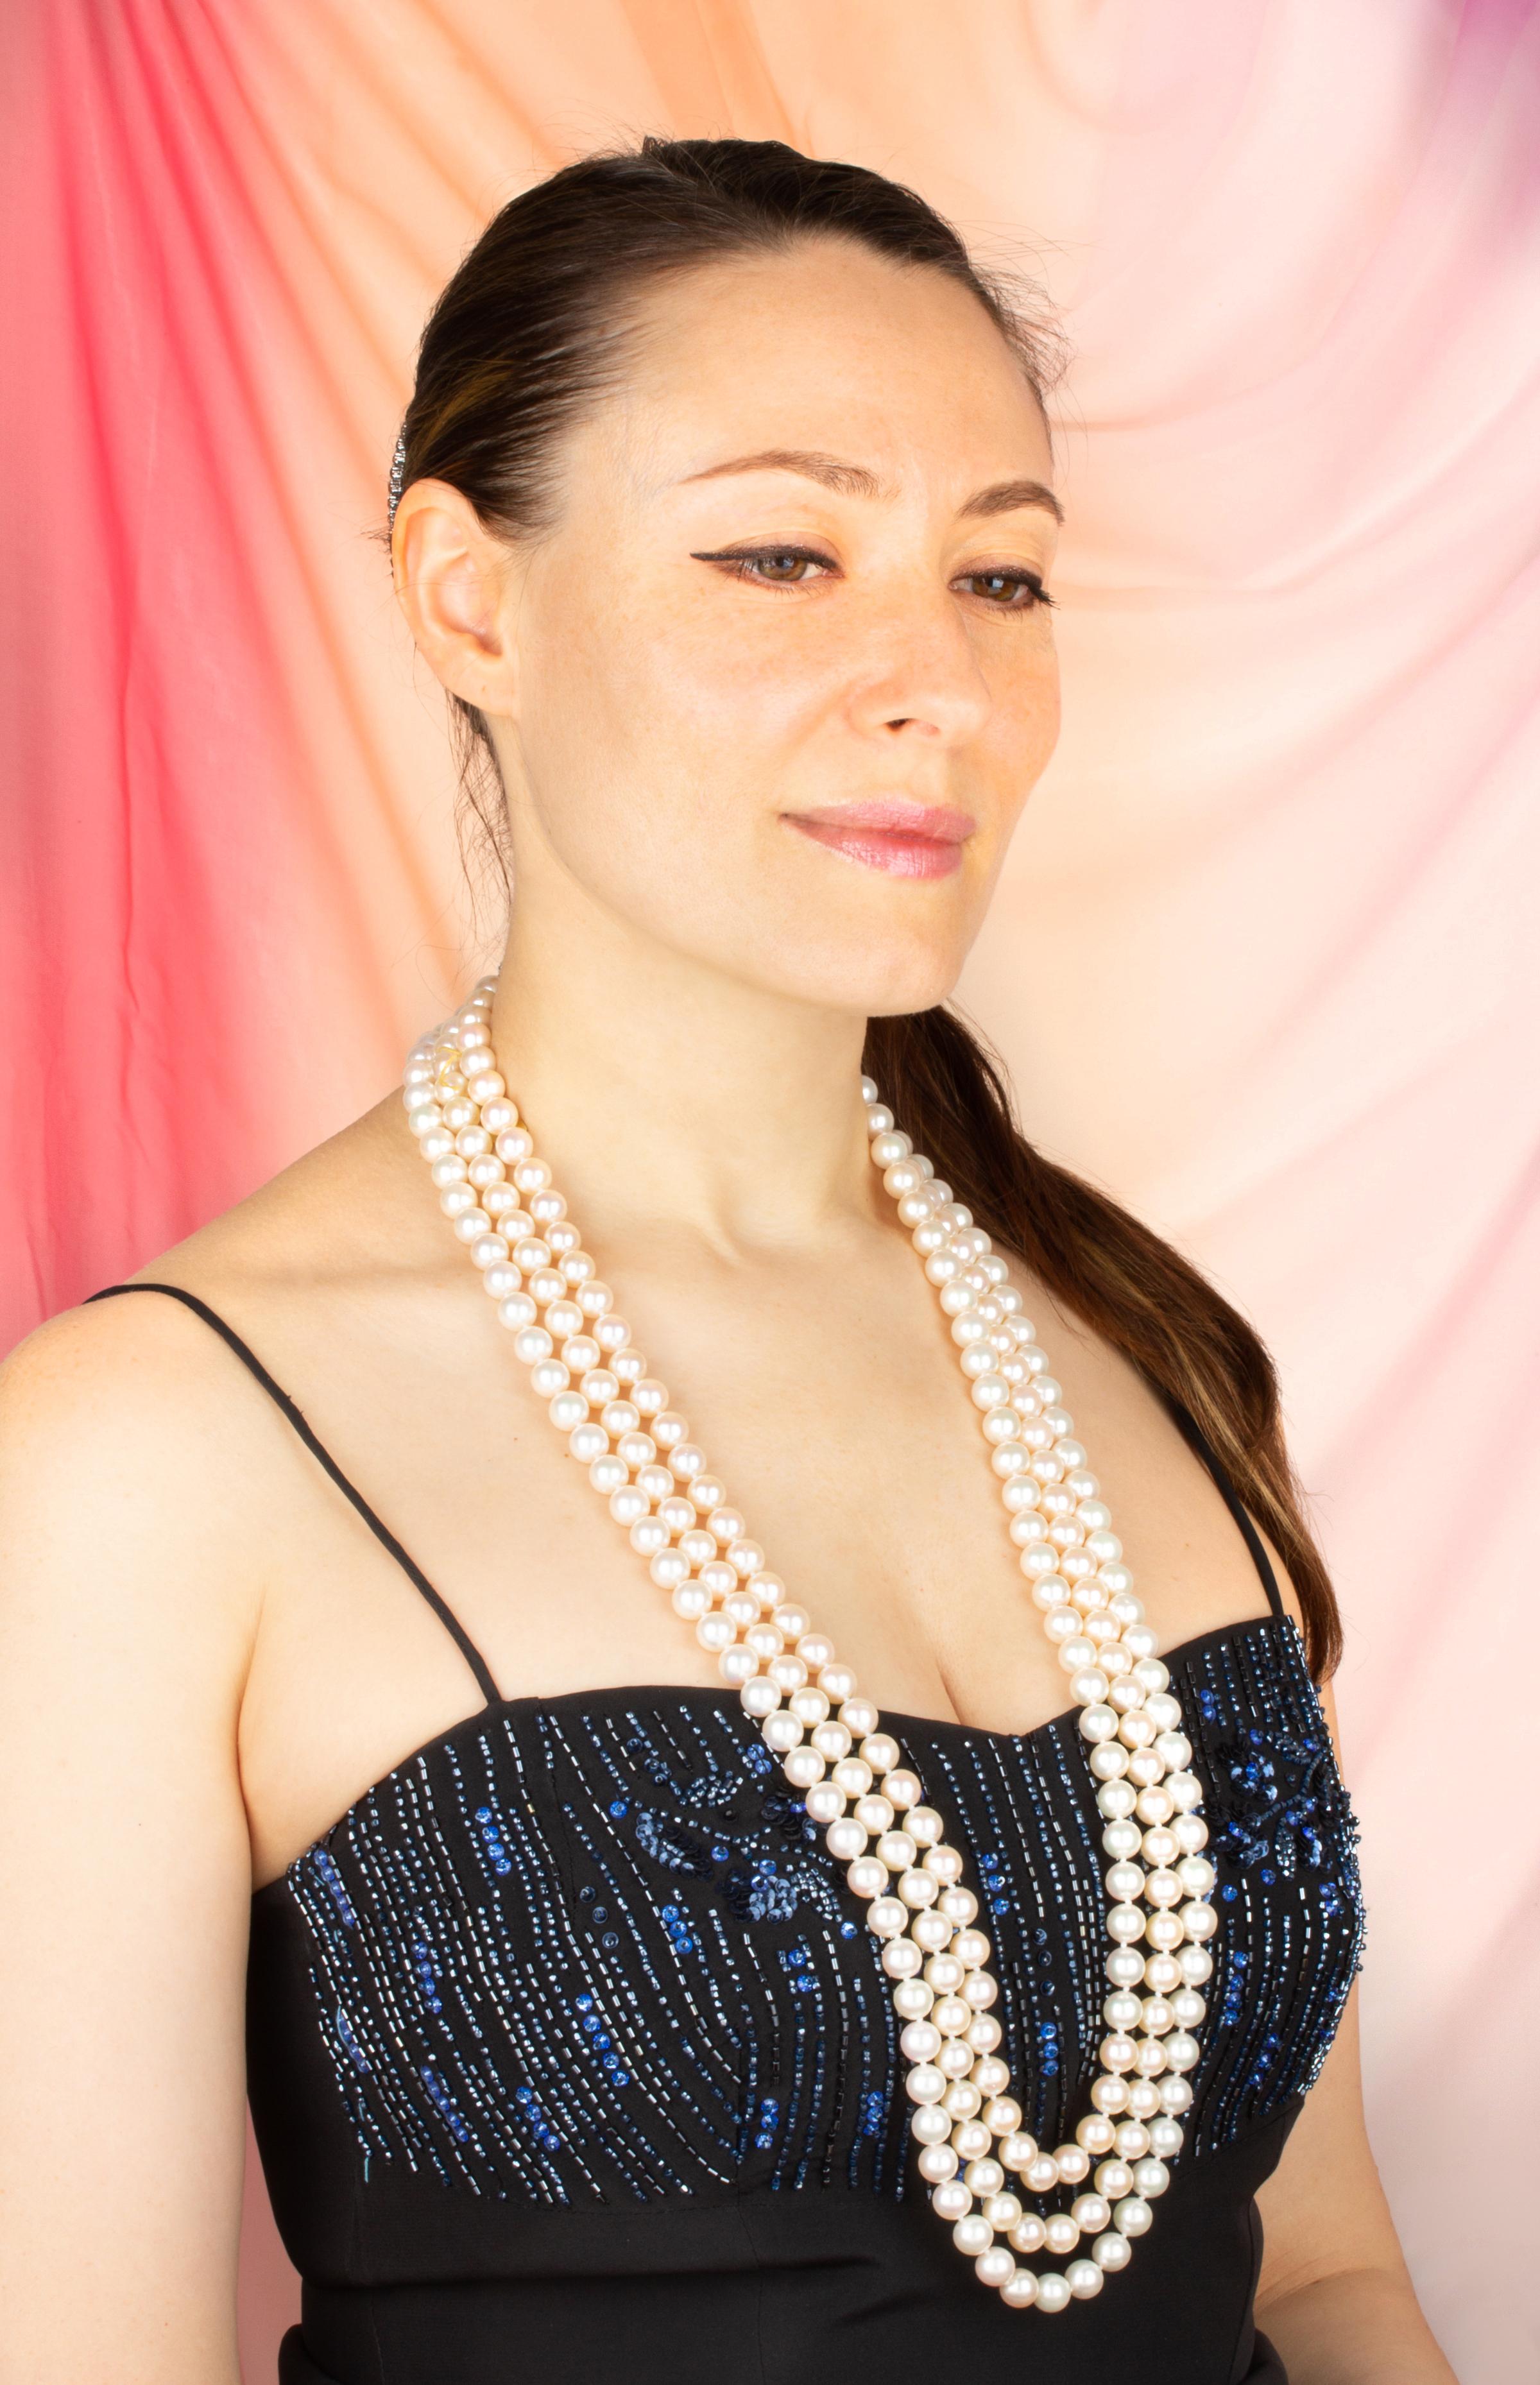 Das dreifache Perlenketten-Set besteht aus 6 originalen Strängen japanischer Perlen mit wunderschönem Perlmutt, Glanz und Schillern. Die Perlen sind homogen und messen 9/9,5 mm im Durchmesser und wurden aus Akoya-Muscheln (